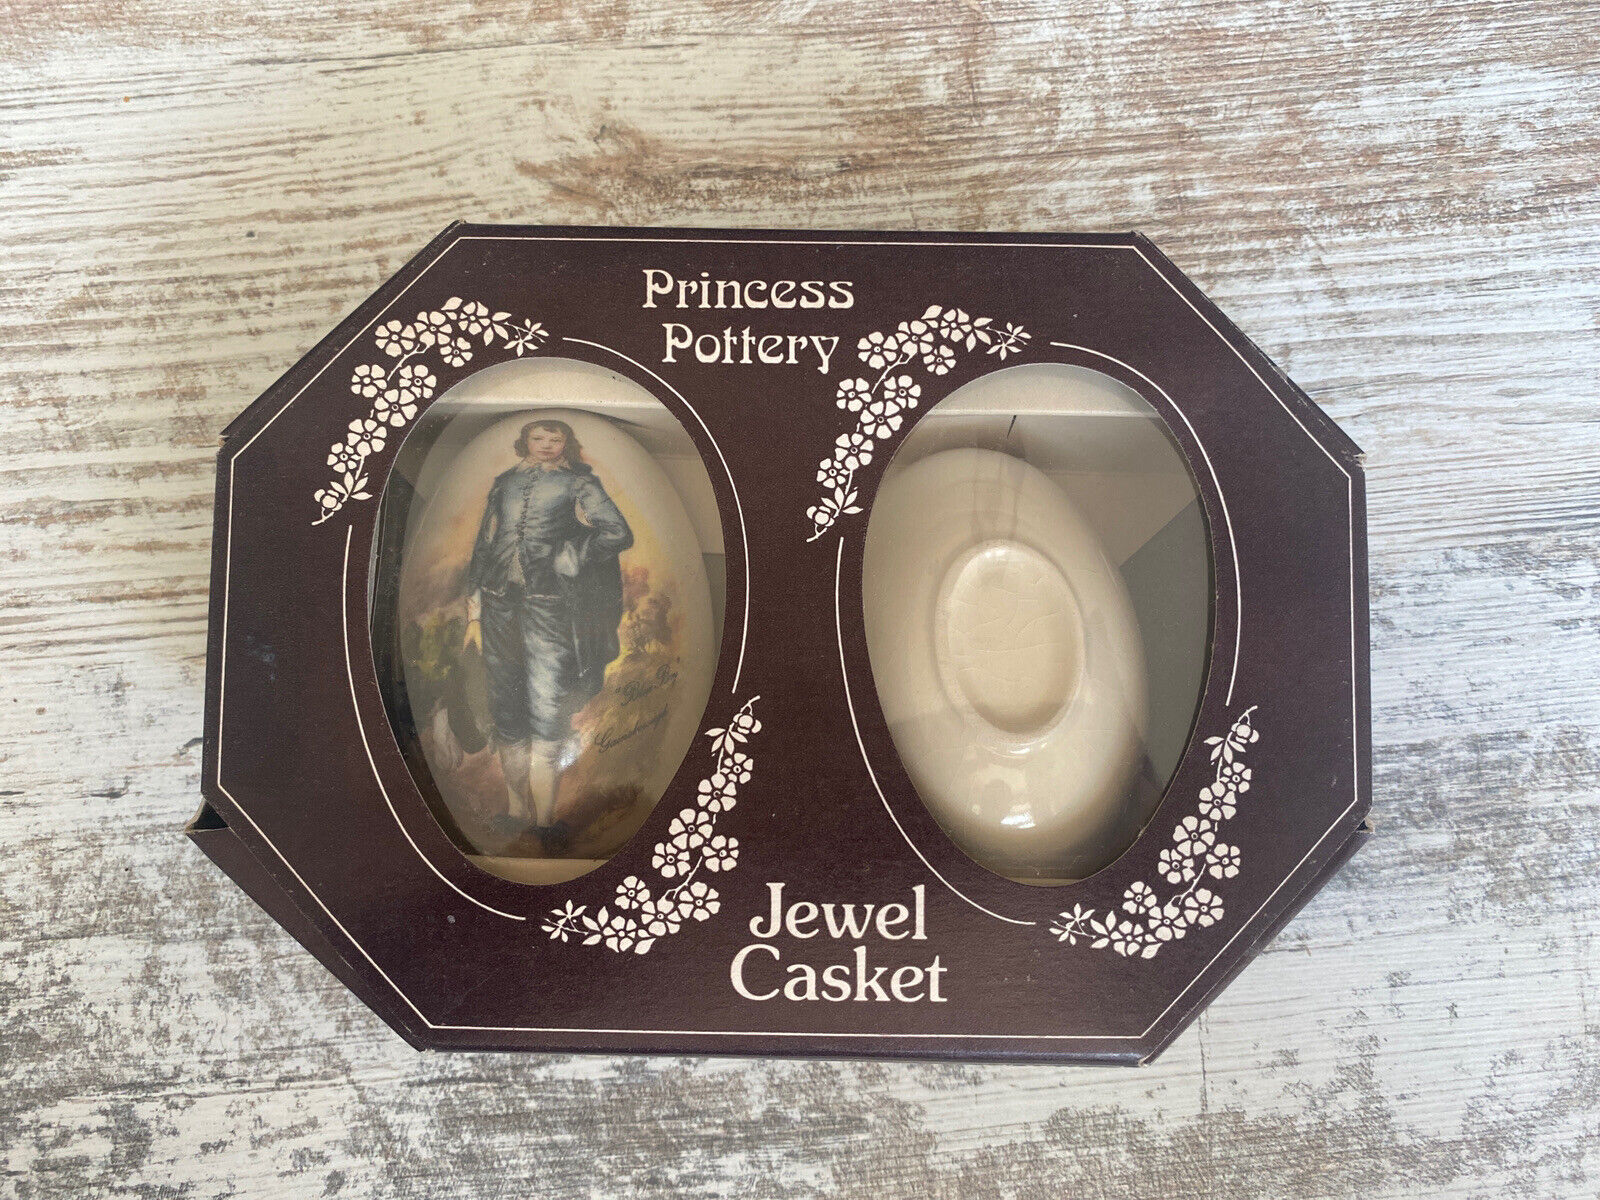 Vintage Princess Potter Jewel Casket - Blue Boy Gainsborough- Boxed